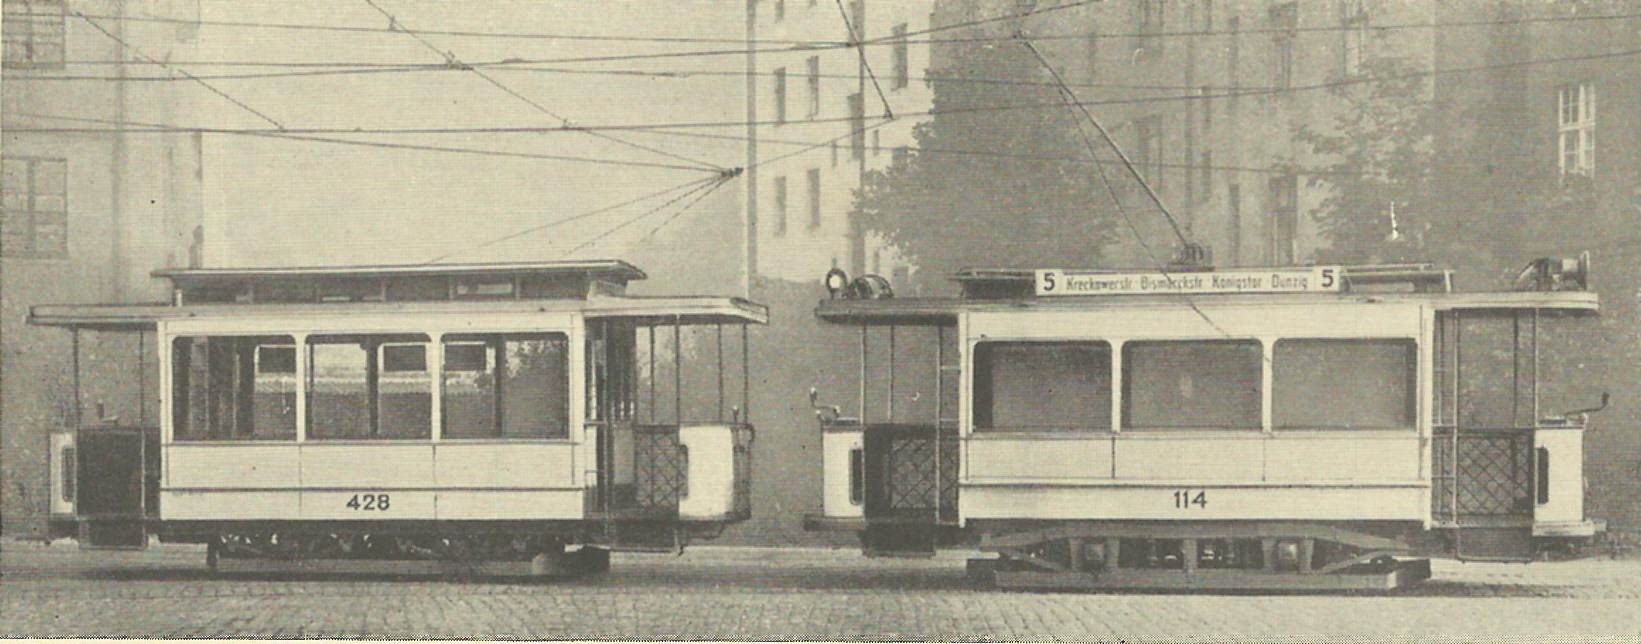 zdjęcie z książki - 50 Jahre Stettiner Strassenbahn 1879-1929 - skład tramwajowy starego typu